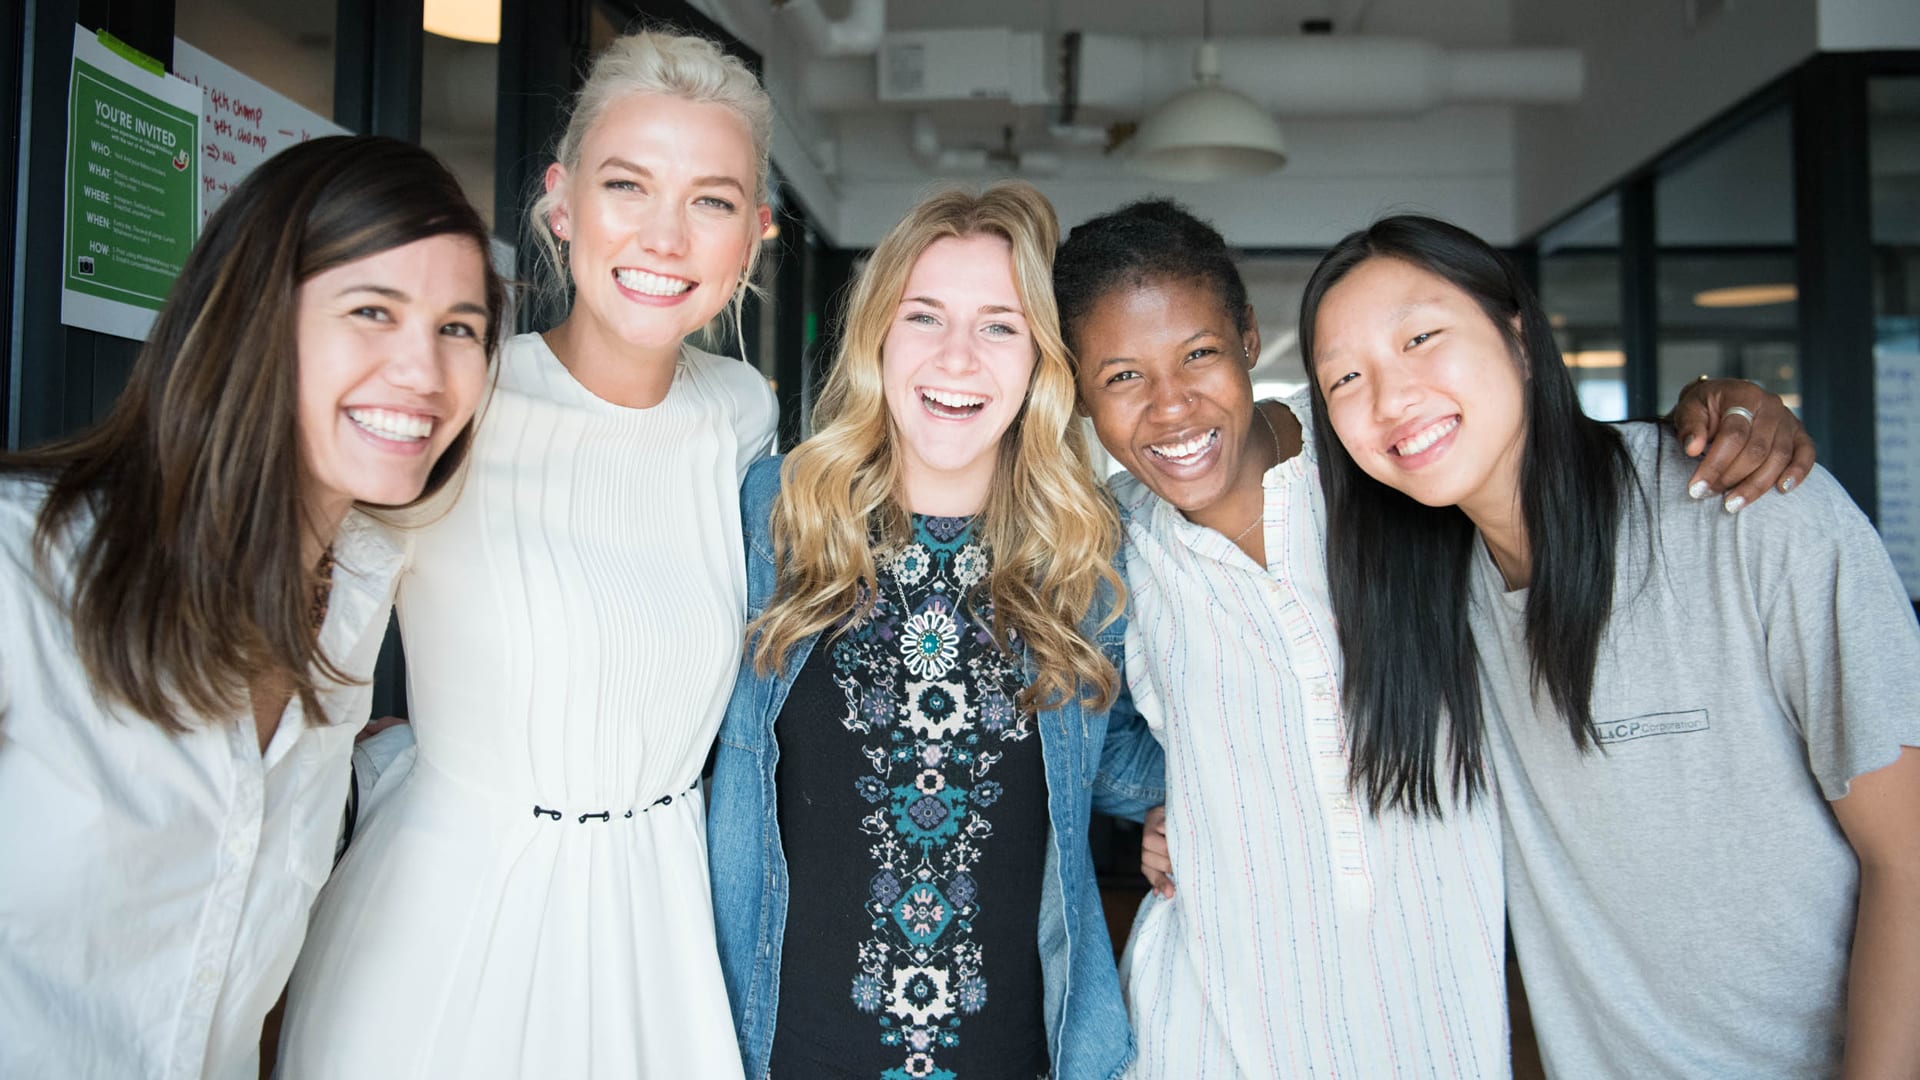 Karlie Kloss’s coding camp will sponsor 1,000 girls this summer